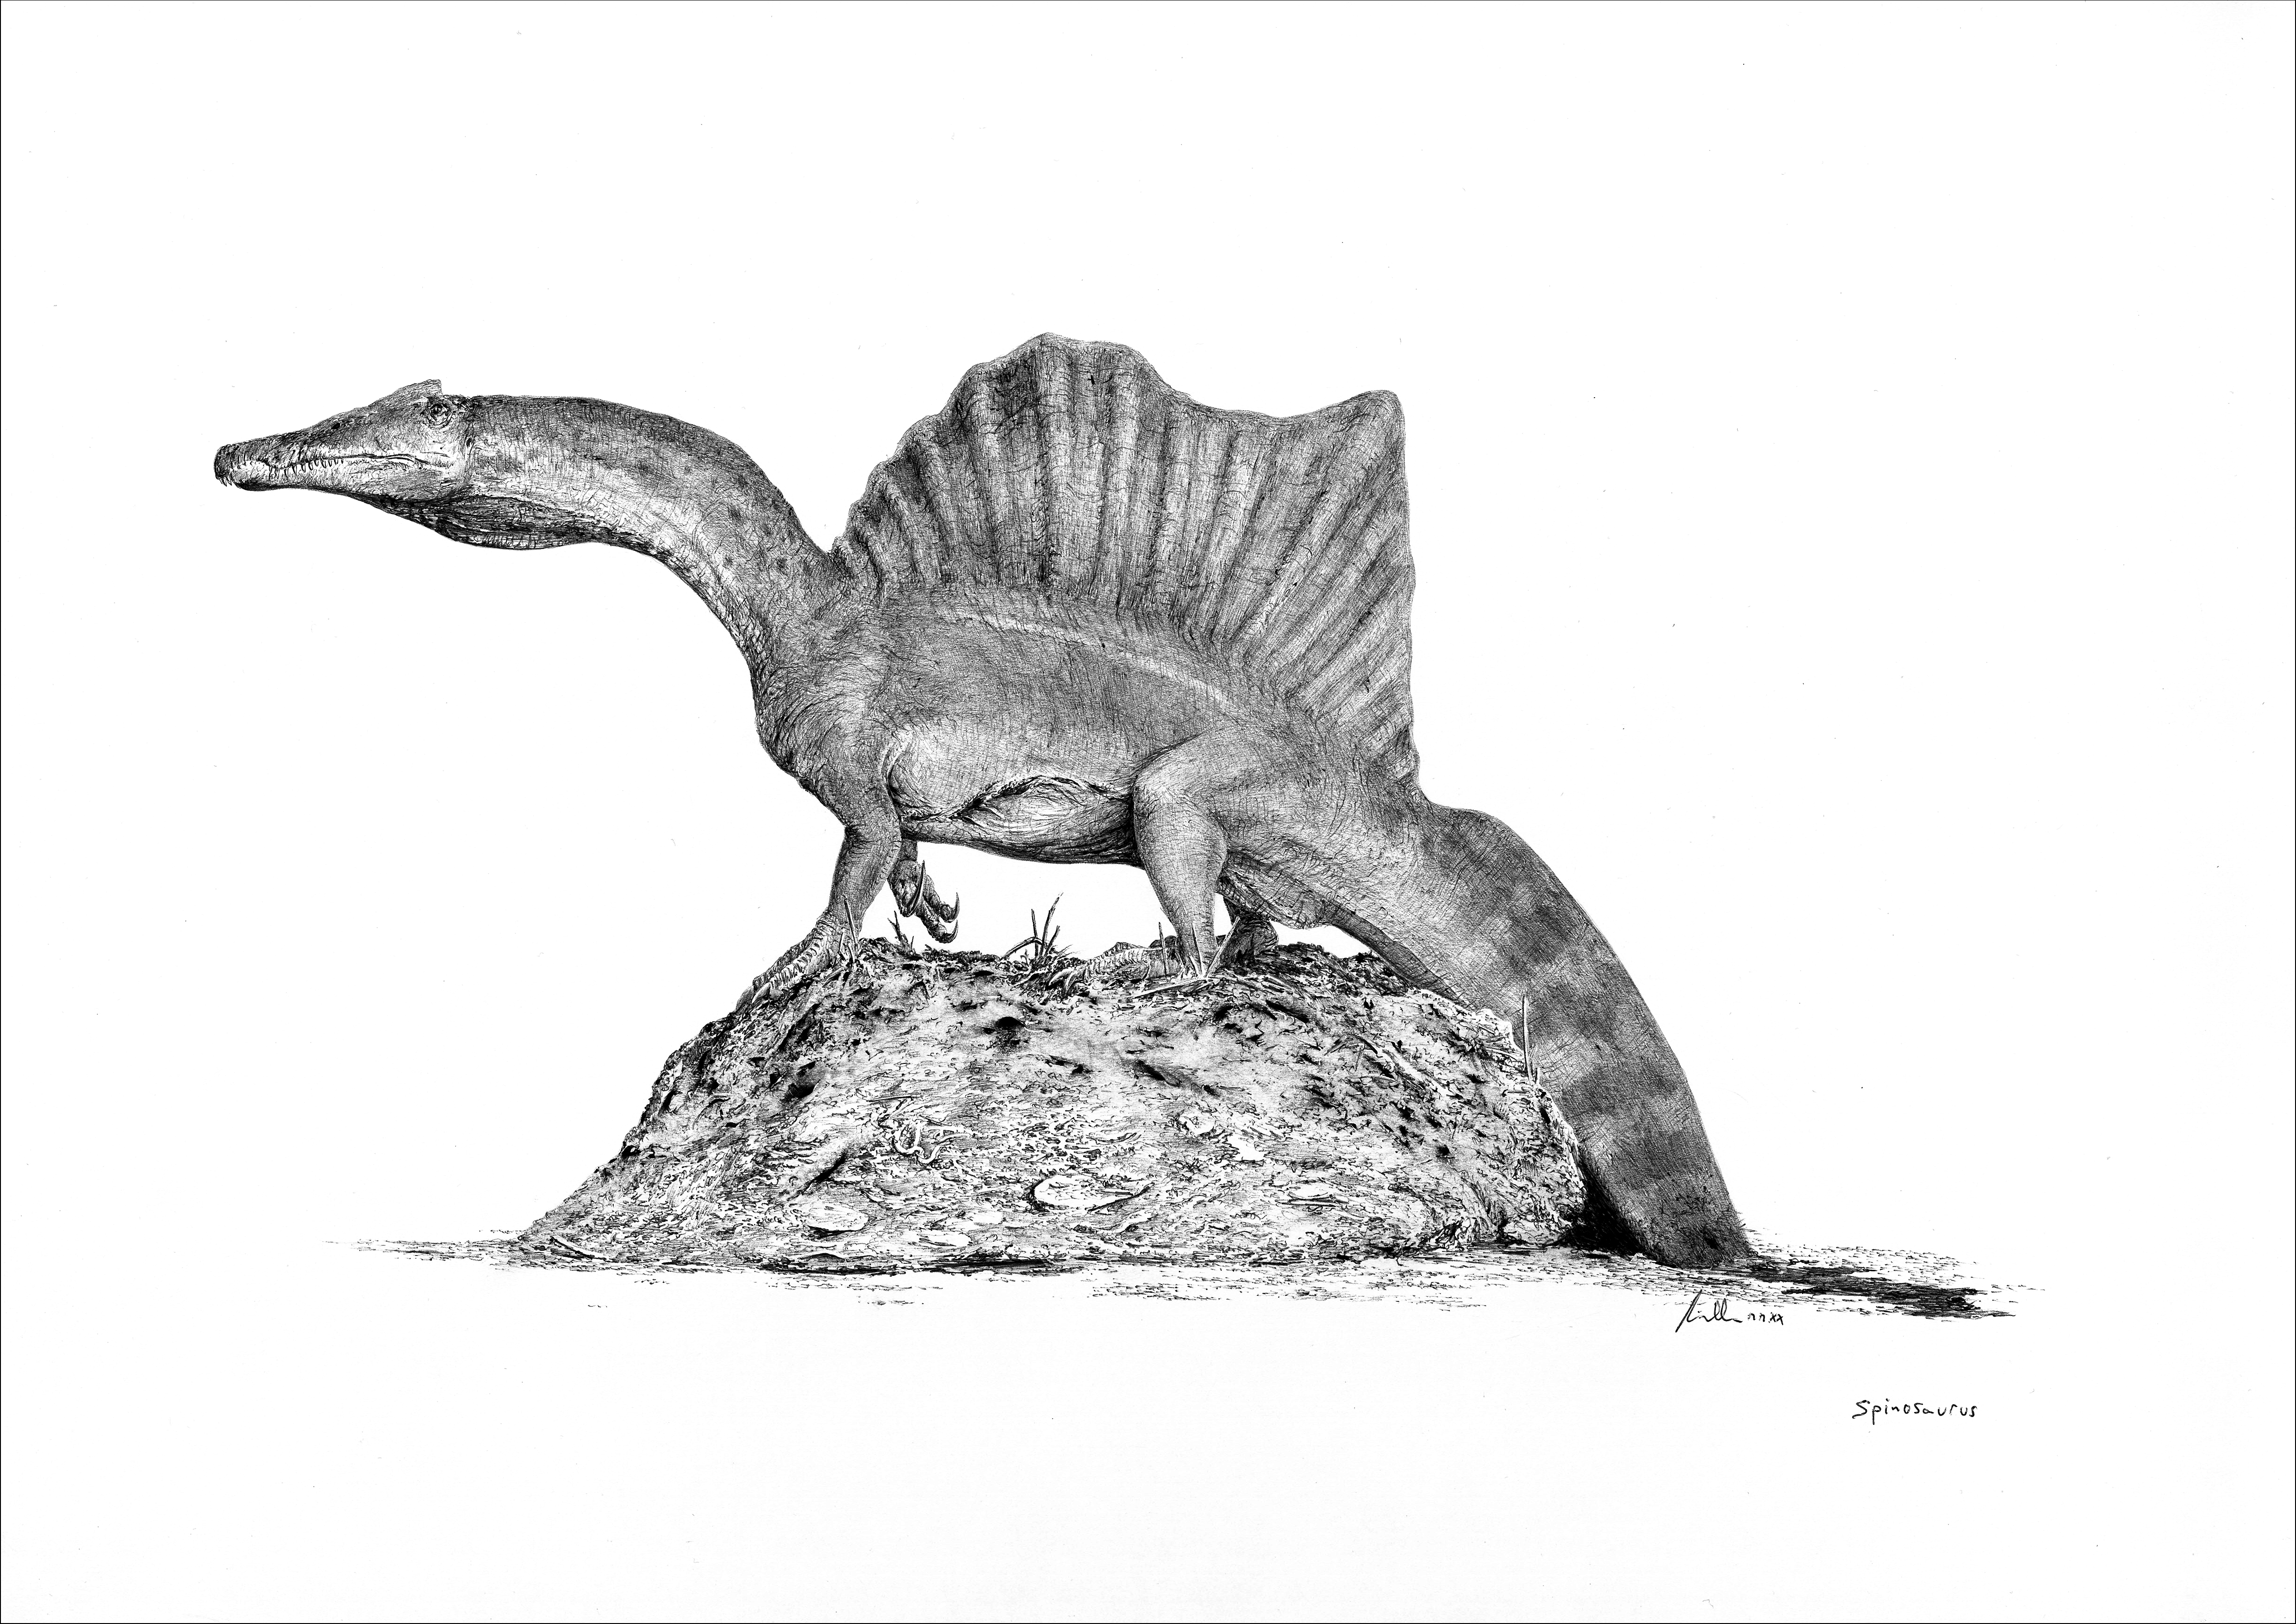 Nové vzezření spinosaura podle aktuální vědecké studie, popisující ocasní část páteře mladého jedince, objeveného v sedimentech souvrství Kem Kem v Maroku. Spinosaurus byl podle nových zjištění prvním známým „obojživelným“ dinosaurem, a to přinejmenš